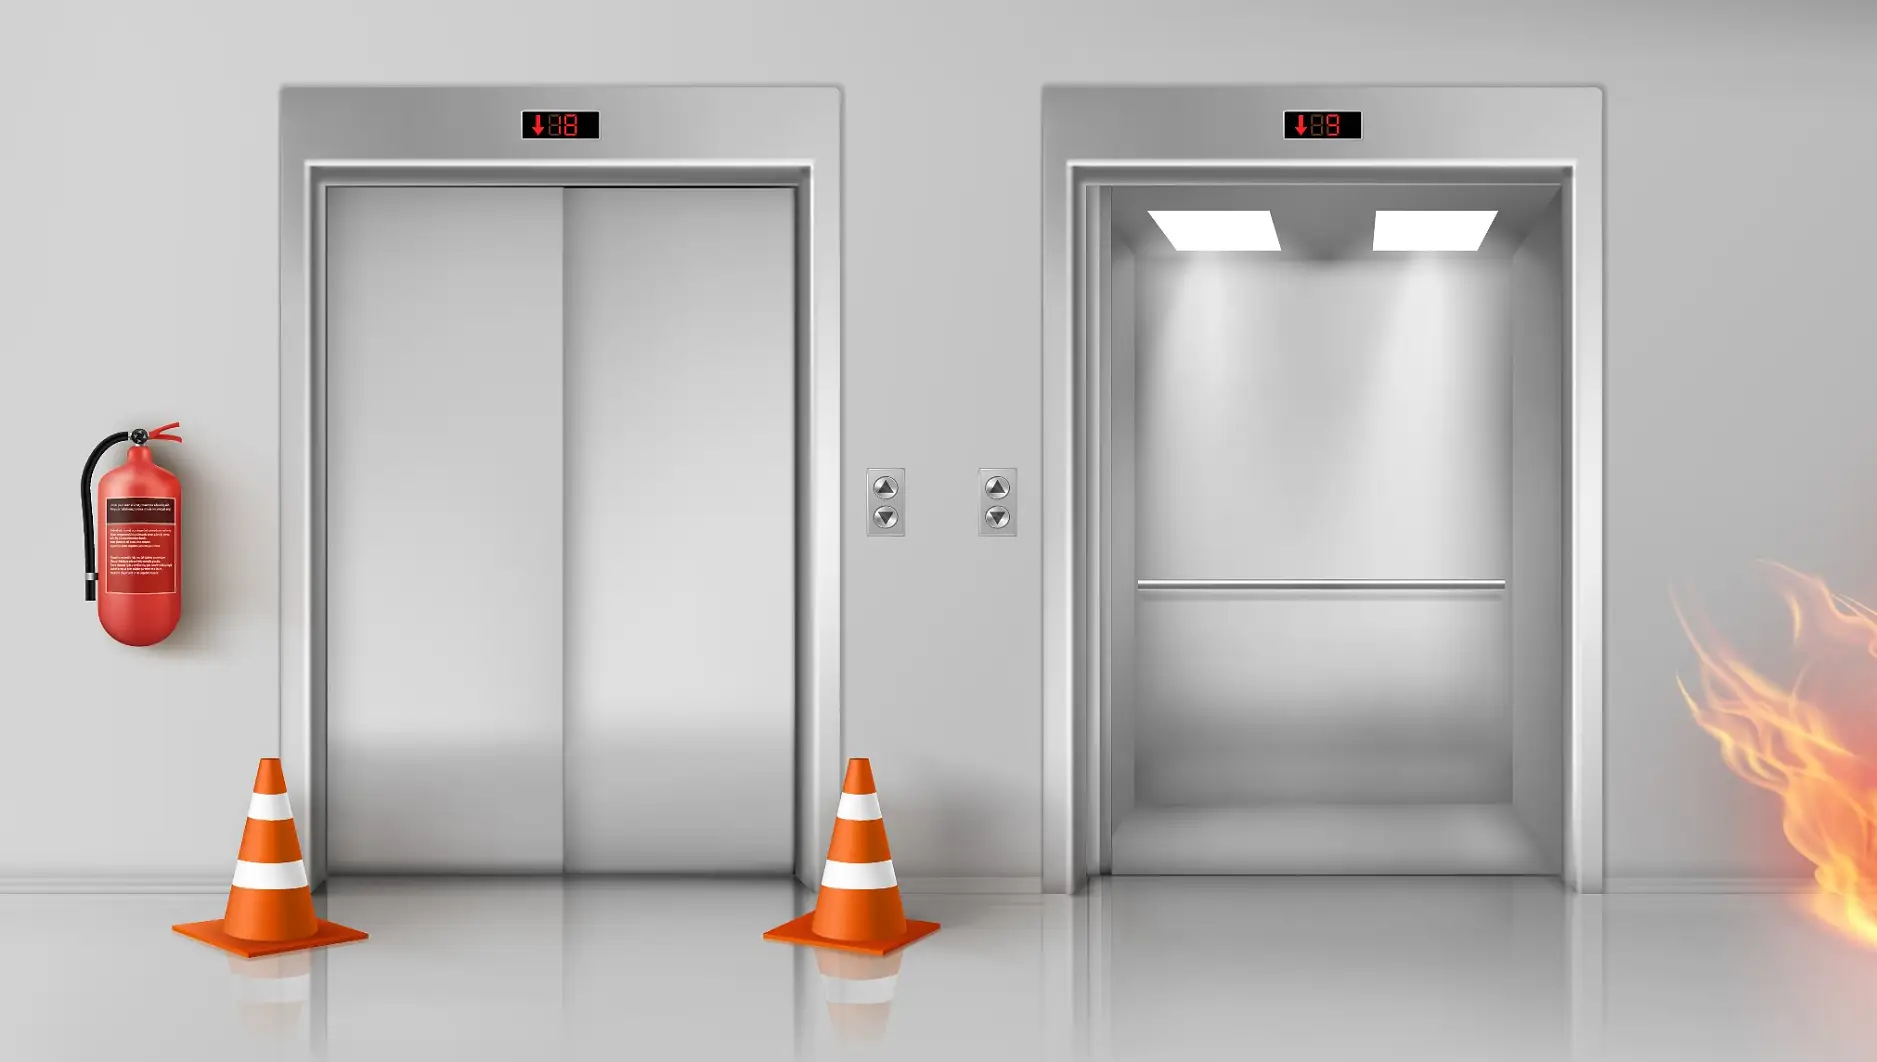 tesa® flameXtinctシリーズは、エレベーターのシャフト内や扉などの防火対策を目的として開発された新製品です。難燃性をもつPEフォーム基材を採用した両面粘着テープです。オフィスビルなどでは煙突効果により燃焼が促進してしまうため、エレベーター付近の対策が非常に重要です。